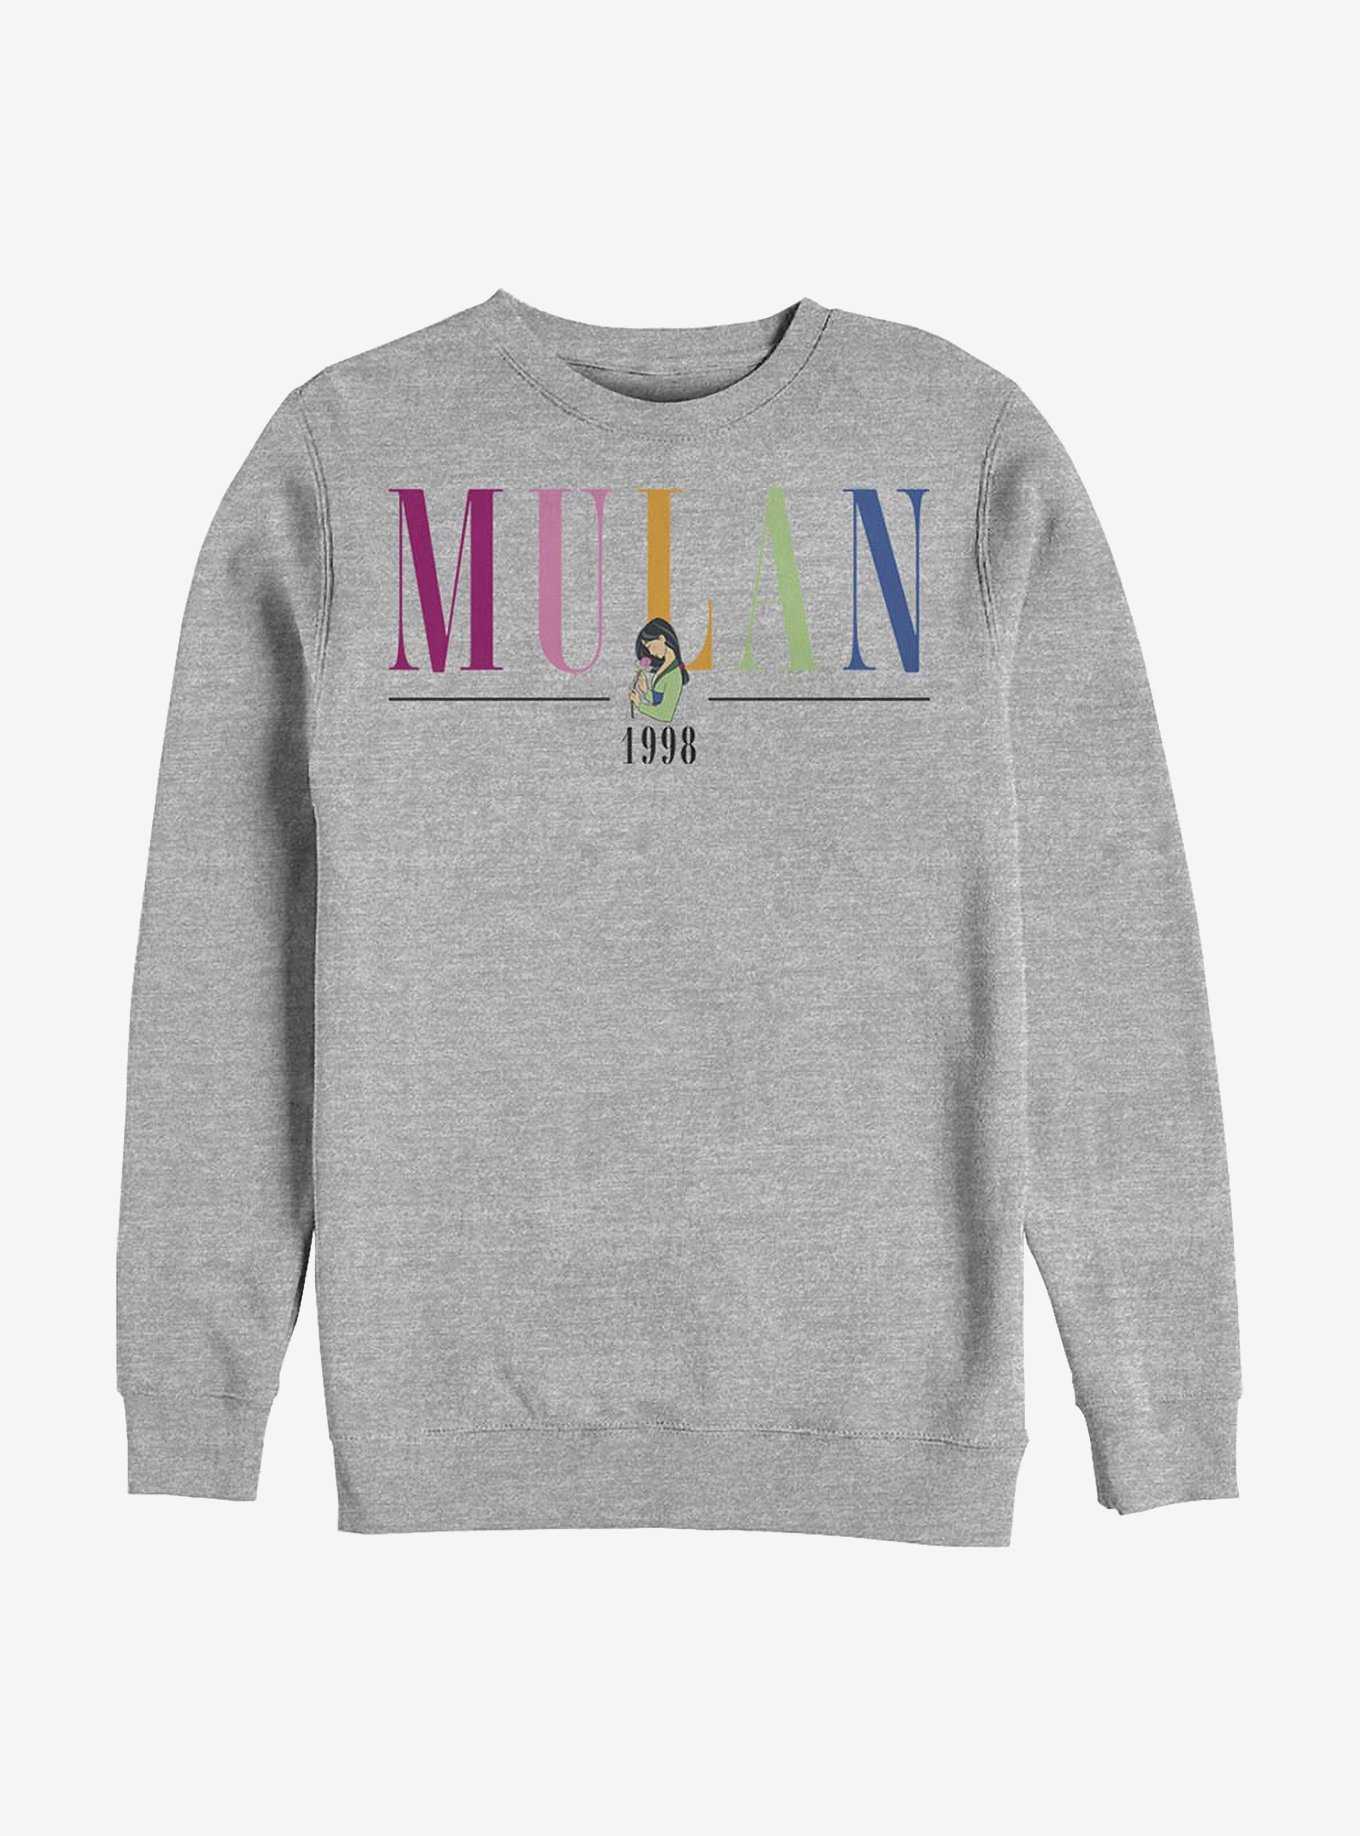 Disney Mulan Title Sweatshirt, , hi-res